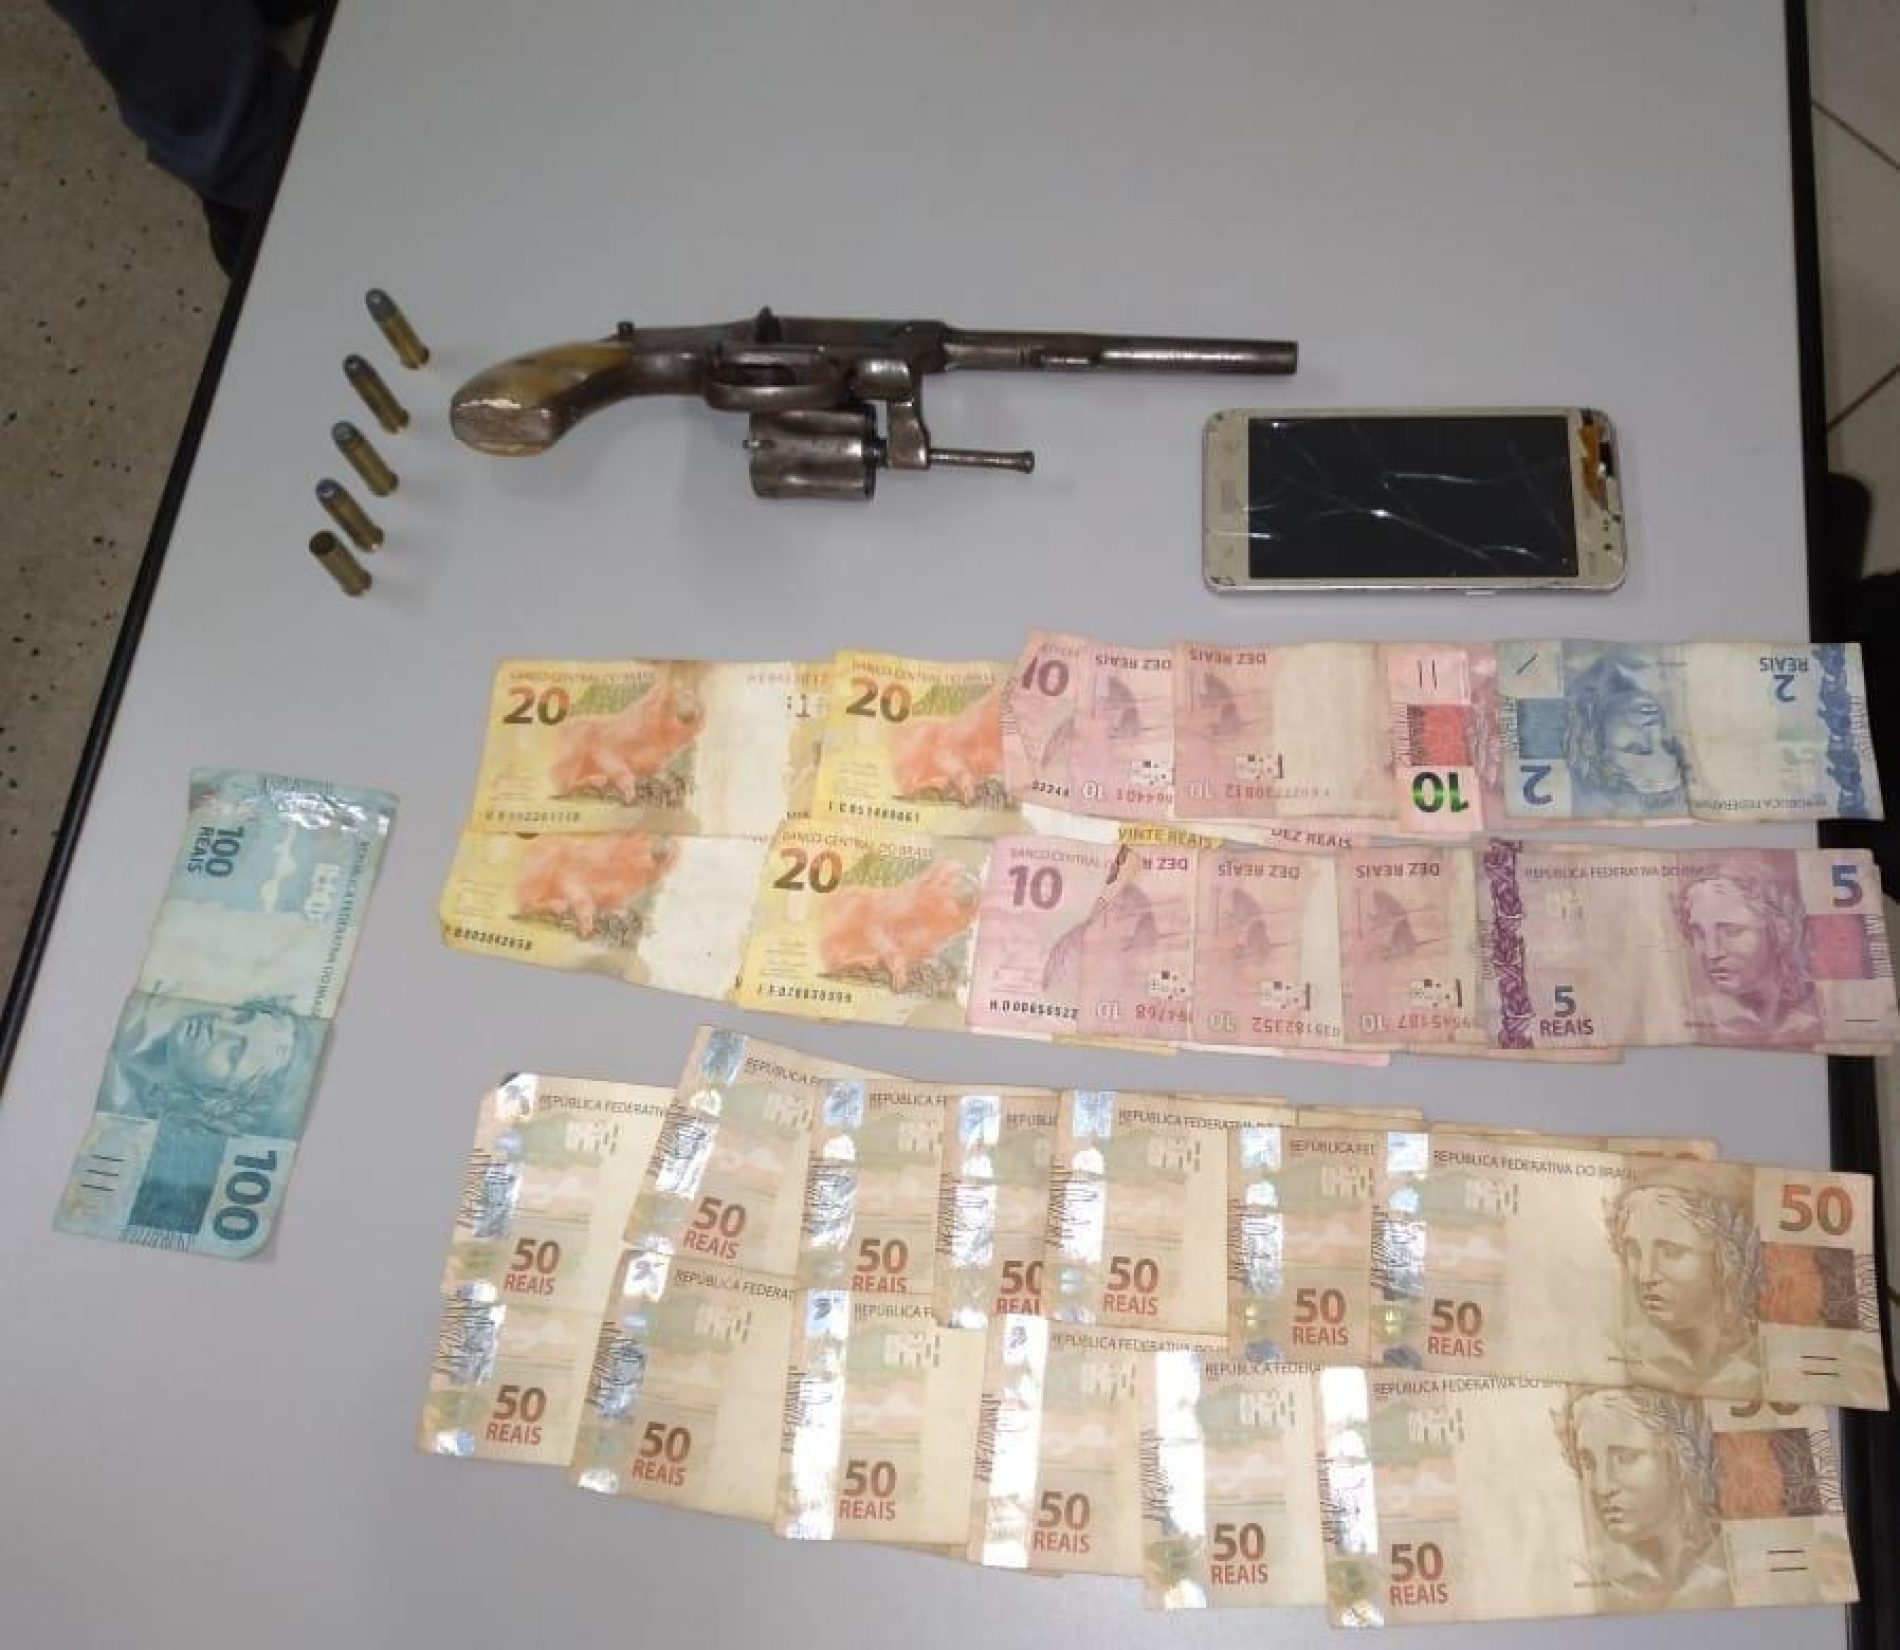 BARRETOS: Cozinheiro é preso com arma de fogo e dinheiro